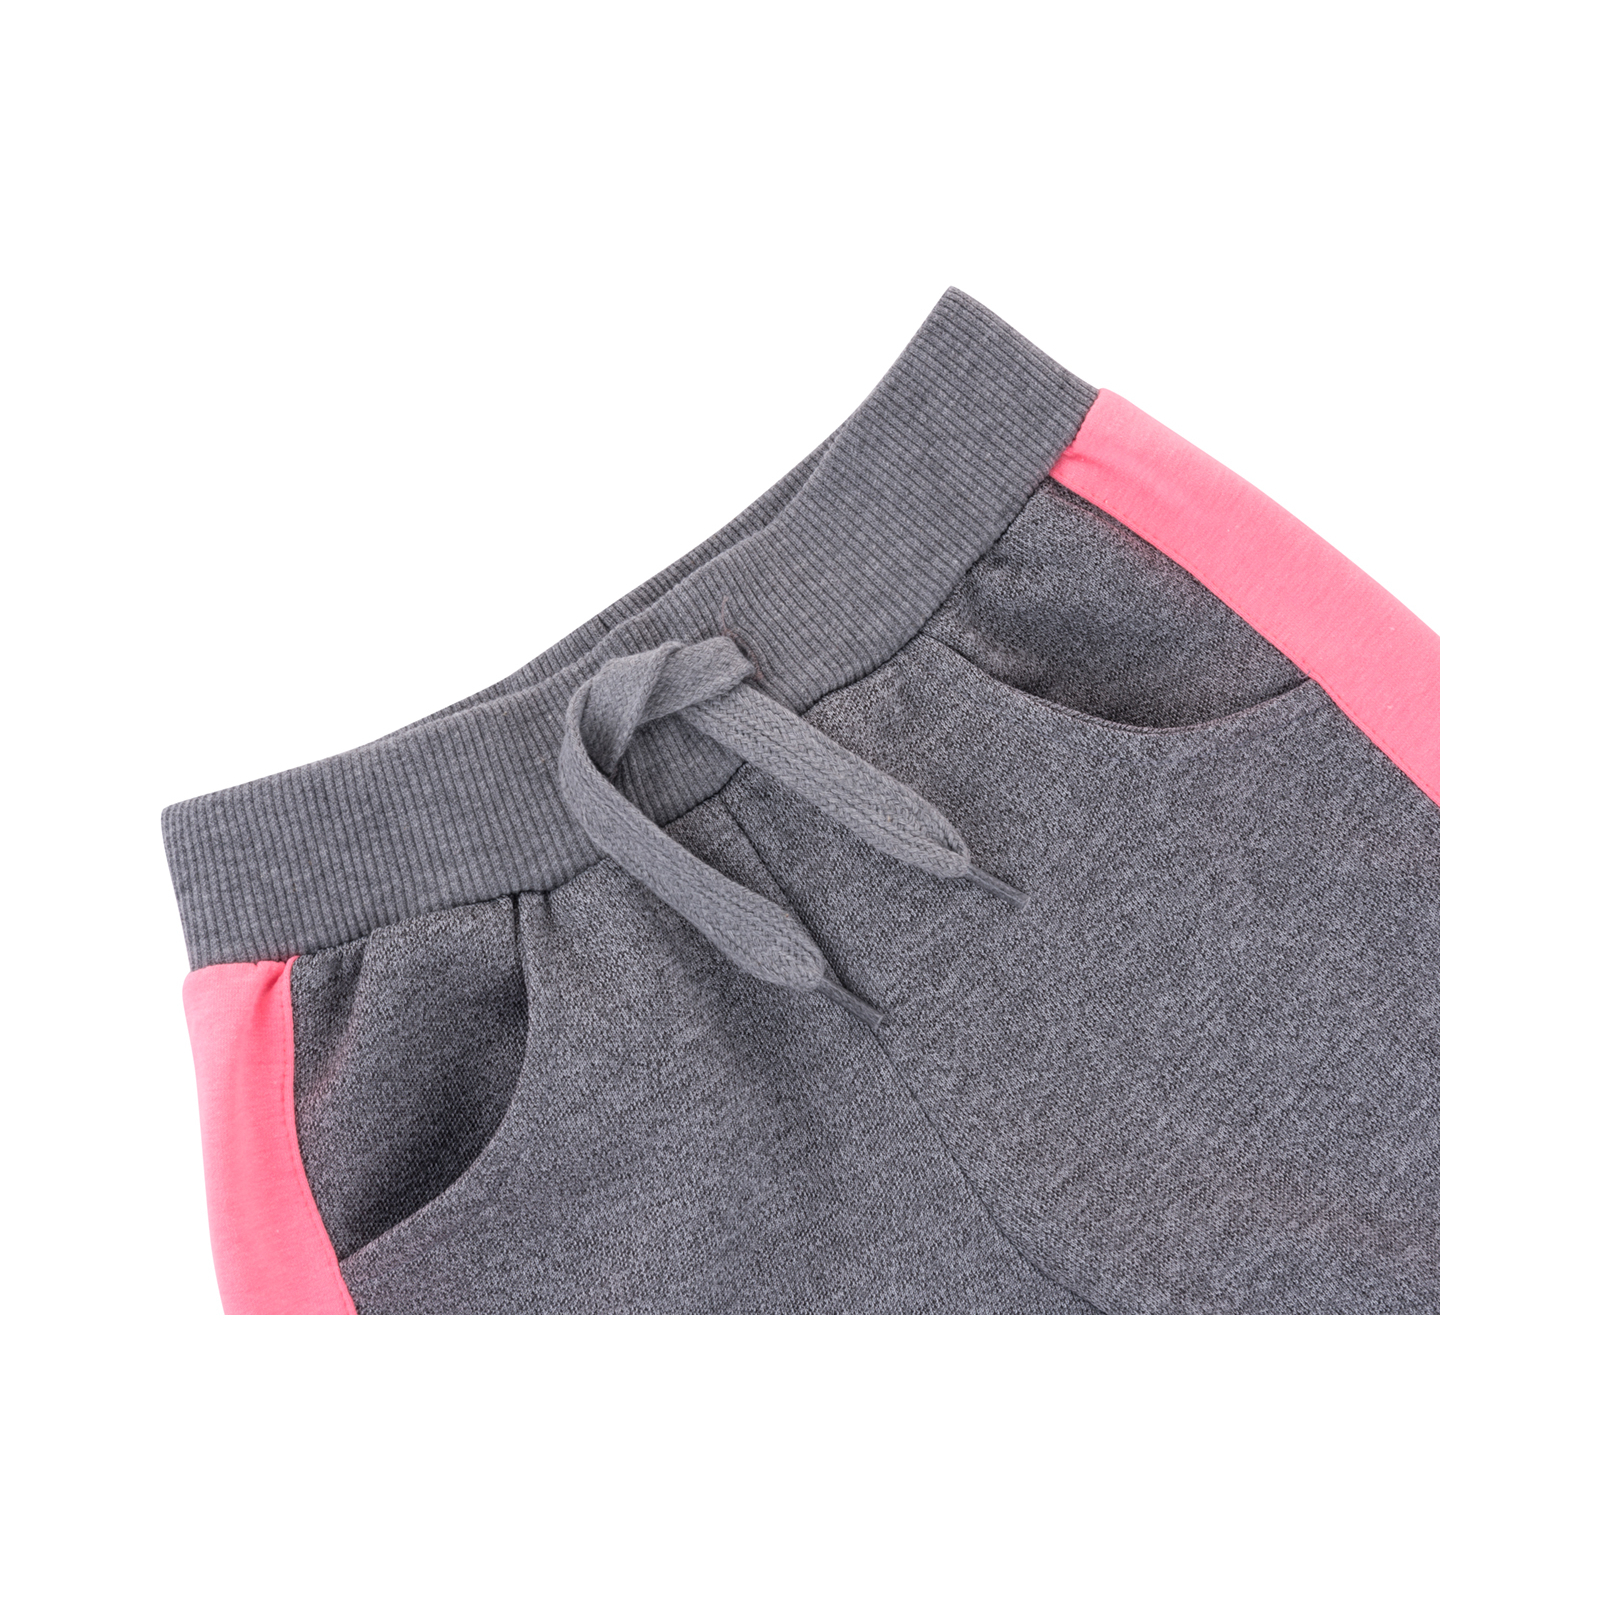 Спортивний костюм Breeze з рожевими лампасами (9553-128G-gray) зображення 11